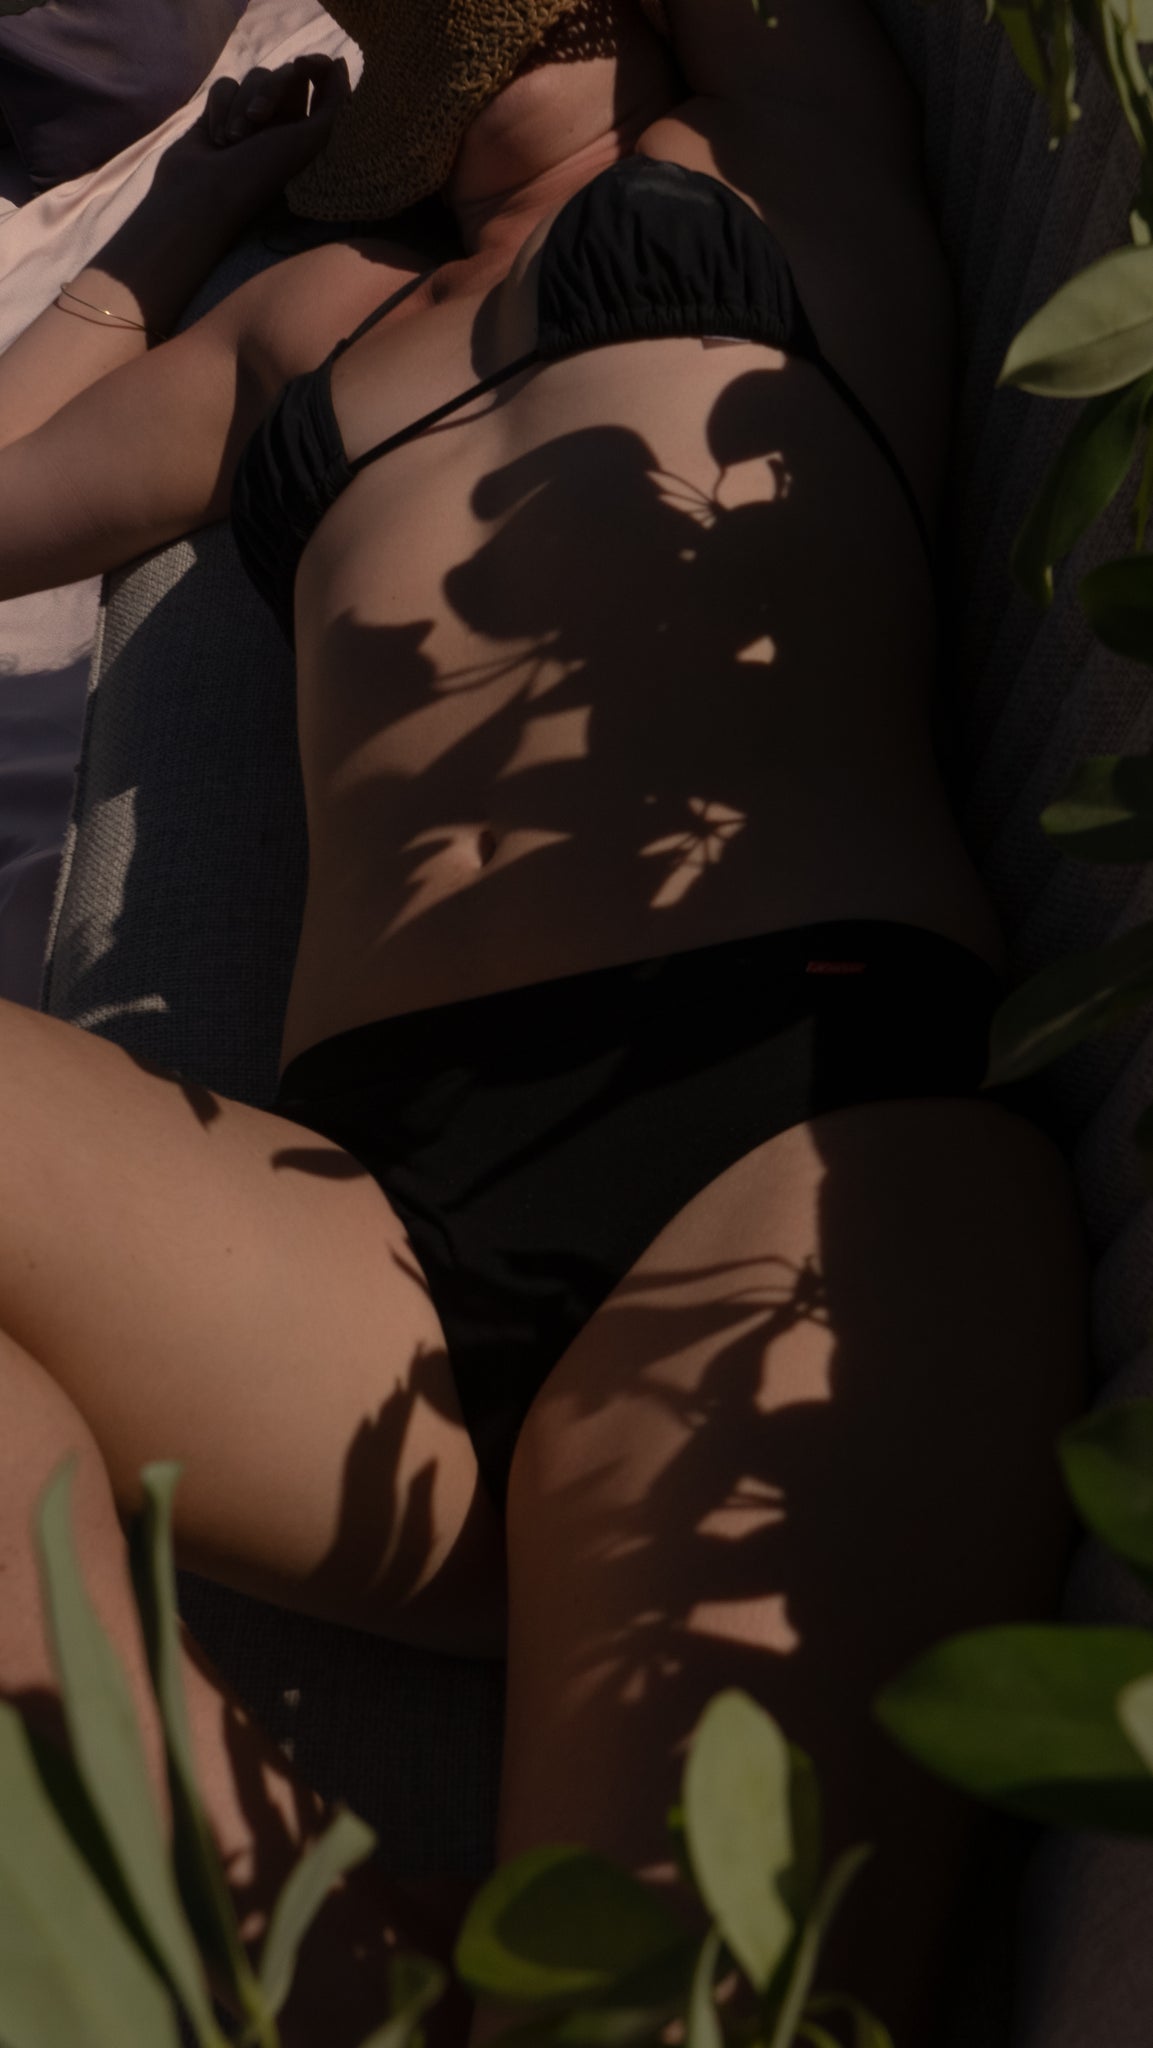 תחתוני מחזור וגביעוניות women with menstrual wuka underwear laying in the shade